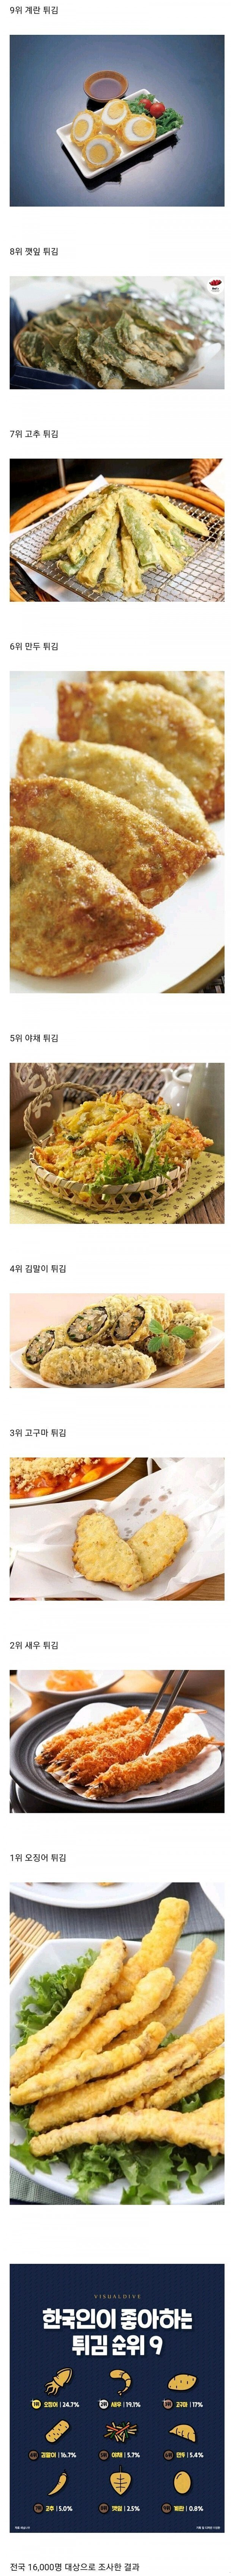 한국인이 좋아하는 튀김 순위.png